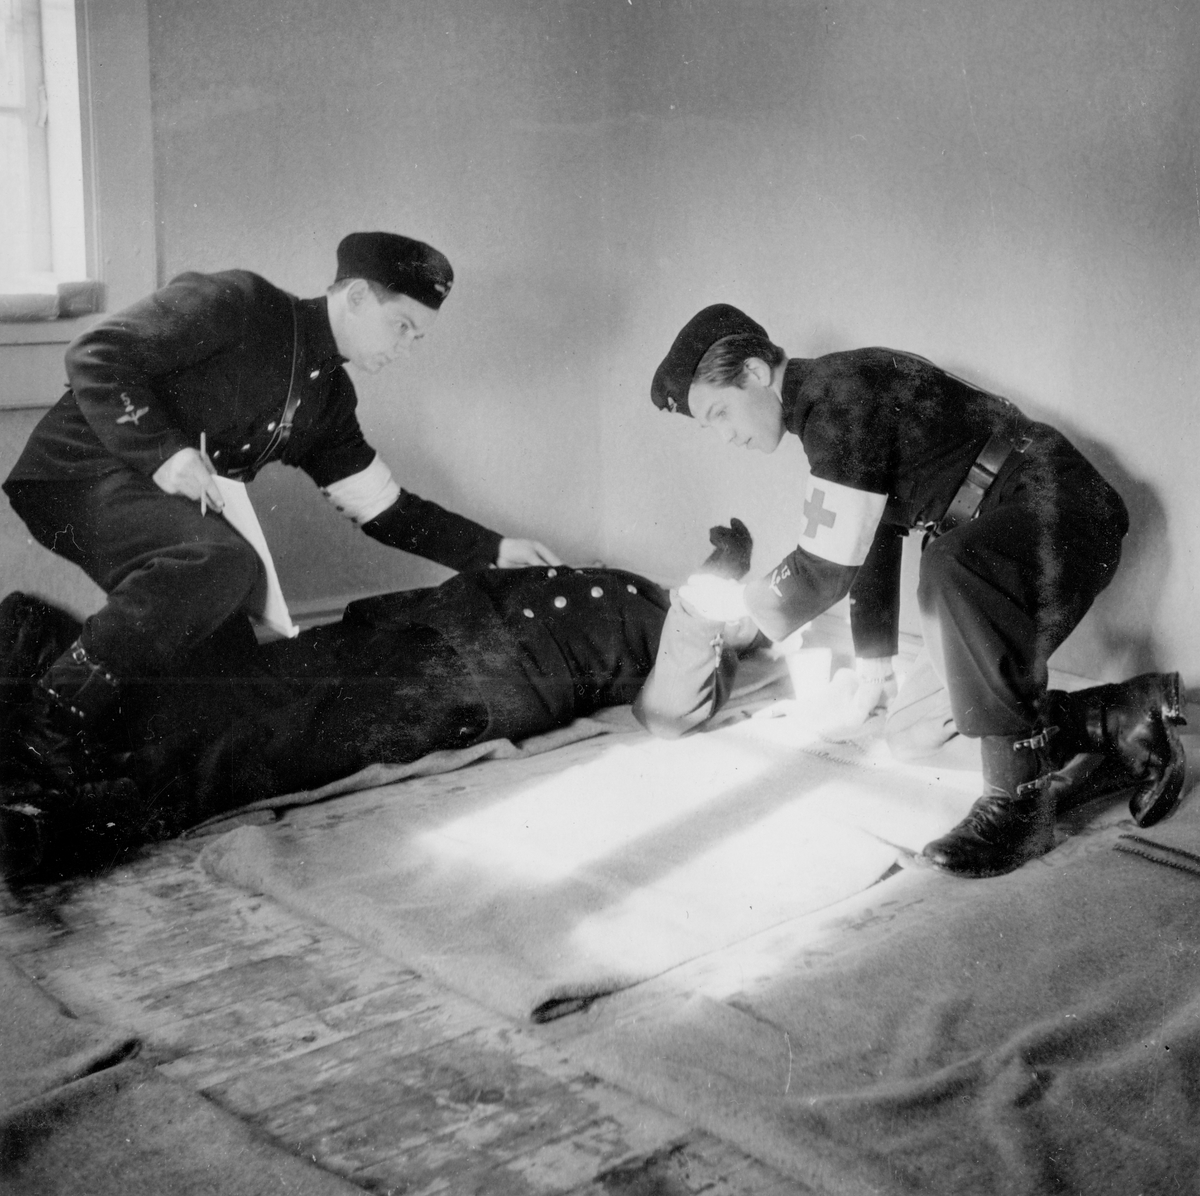 Skadad soldat tas om hand på sjukkvarter vid sjukvårdsövning i fält vid F 11 Södermanlands flygflottilj, 1945. 

Ur fotoalbum "Sjukvårdsskolan 15/1-15/3 1945" från F 11.